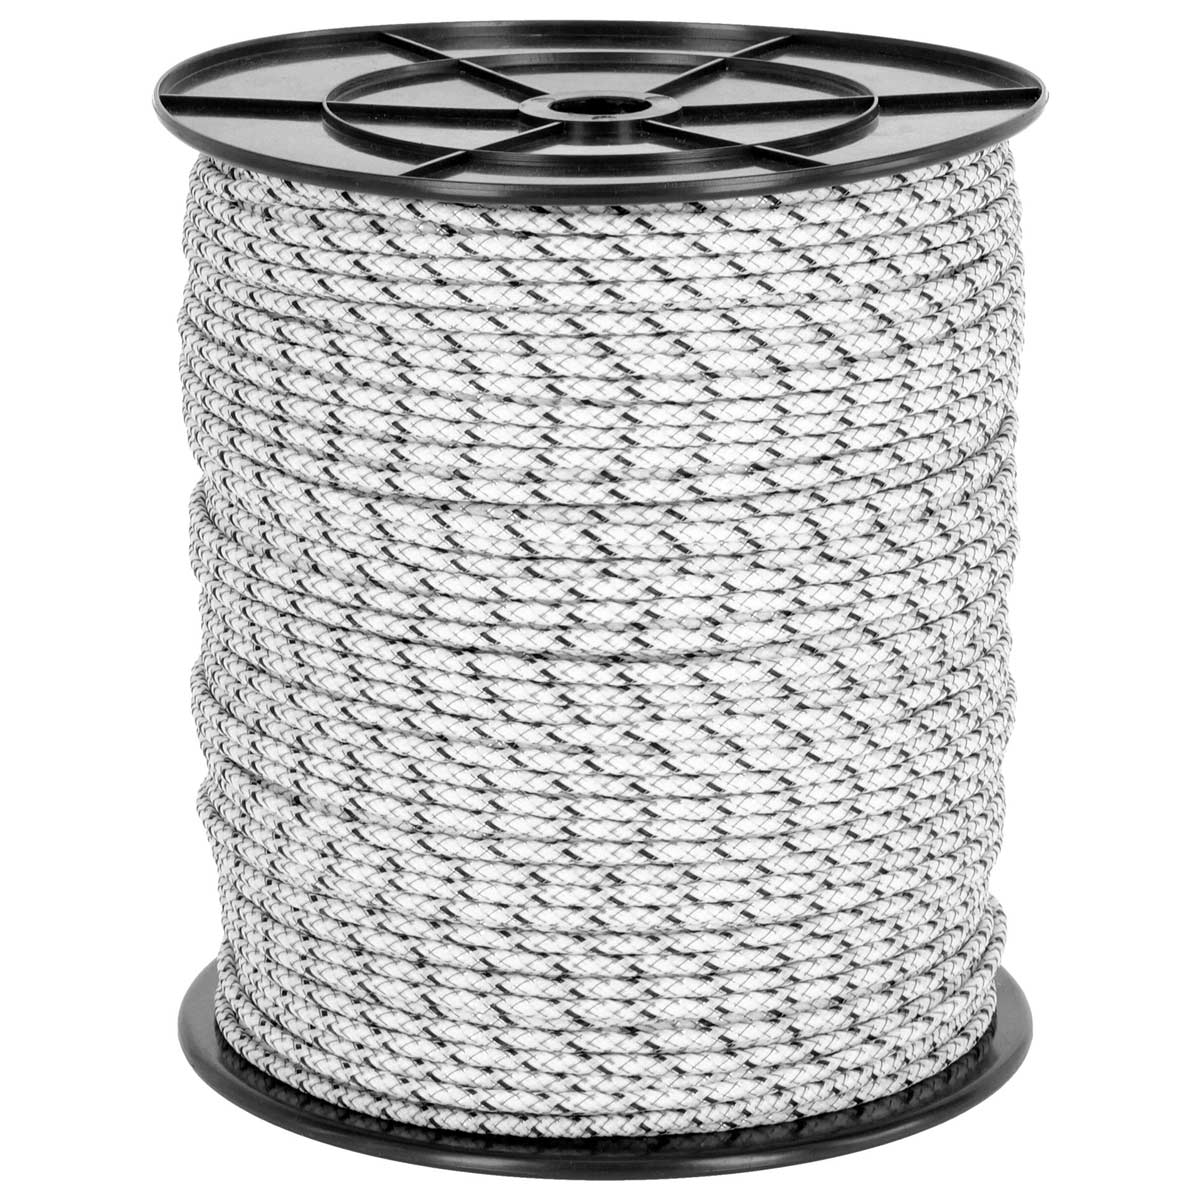 Corde de clôture électrique AKO TopLine Ultra 300m, Ø 5.5mm, 6x0.30 TriCOND, blanc / noir